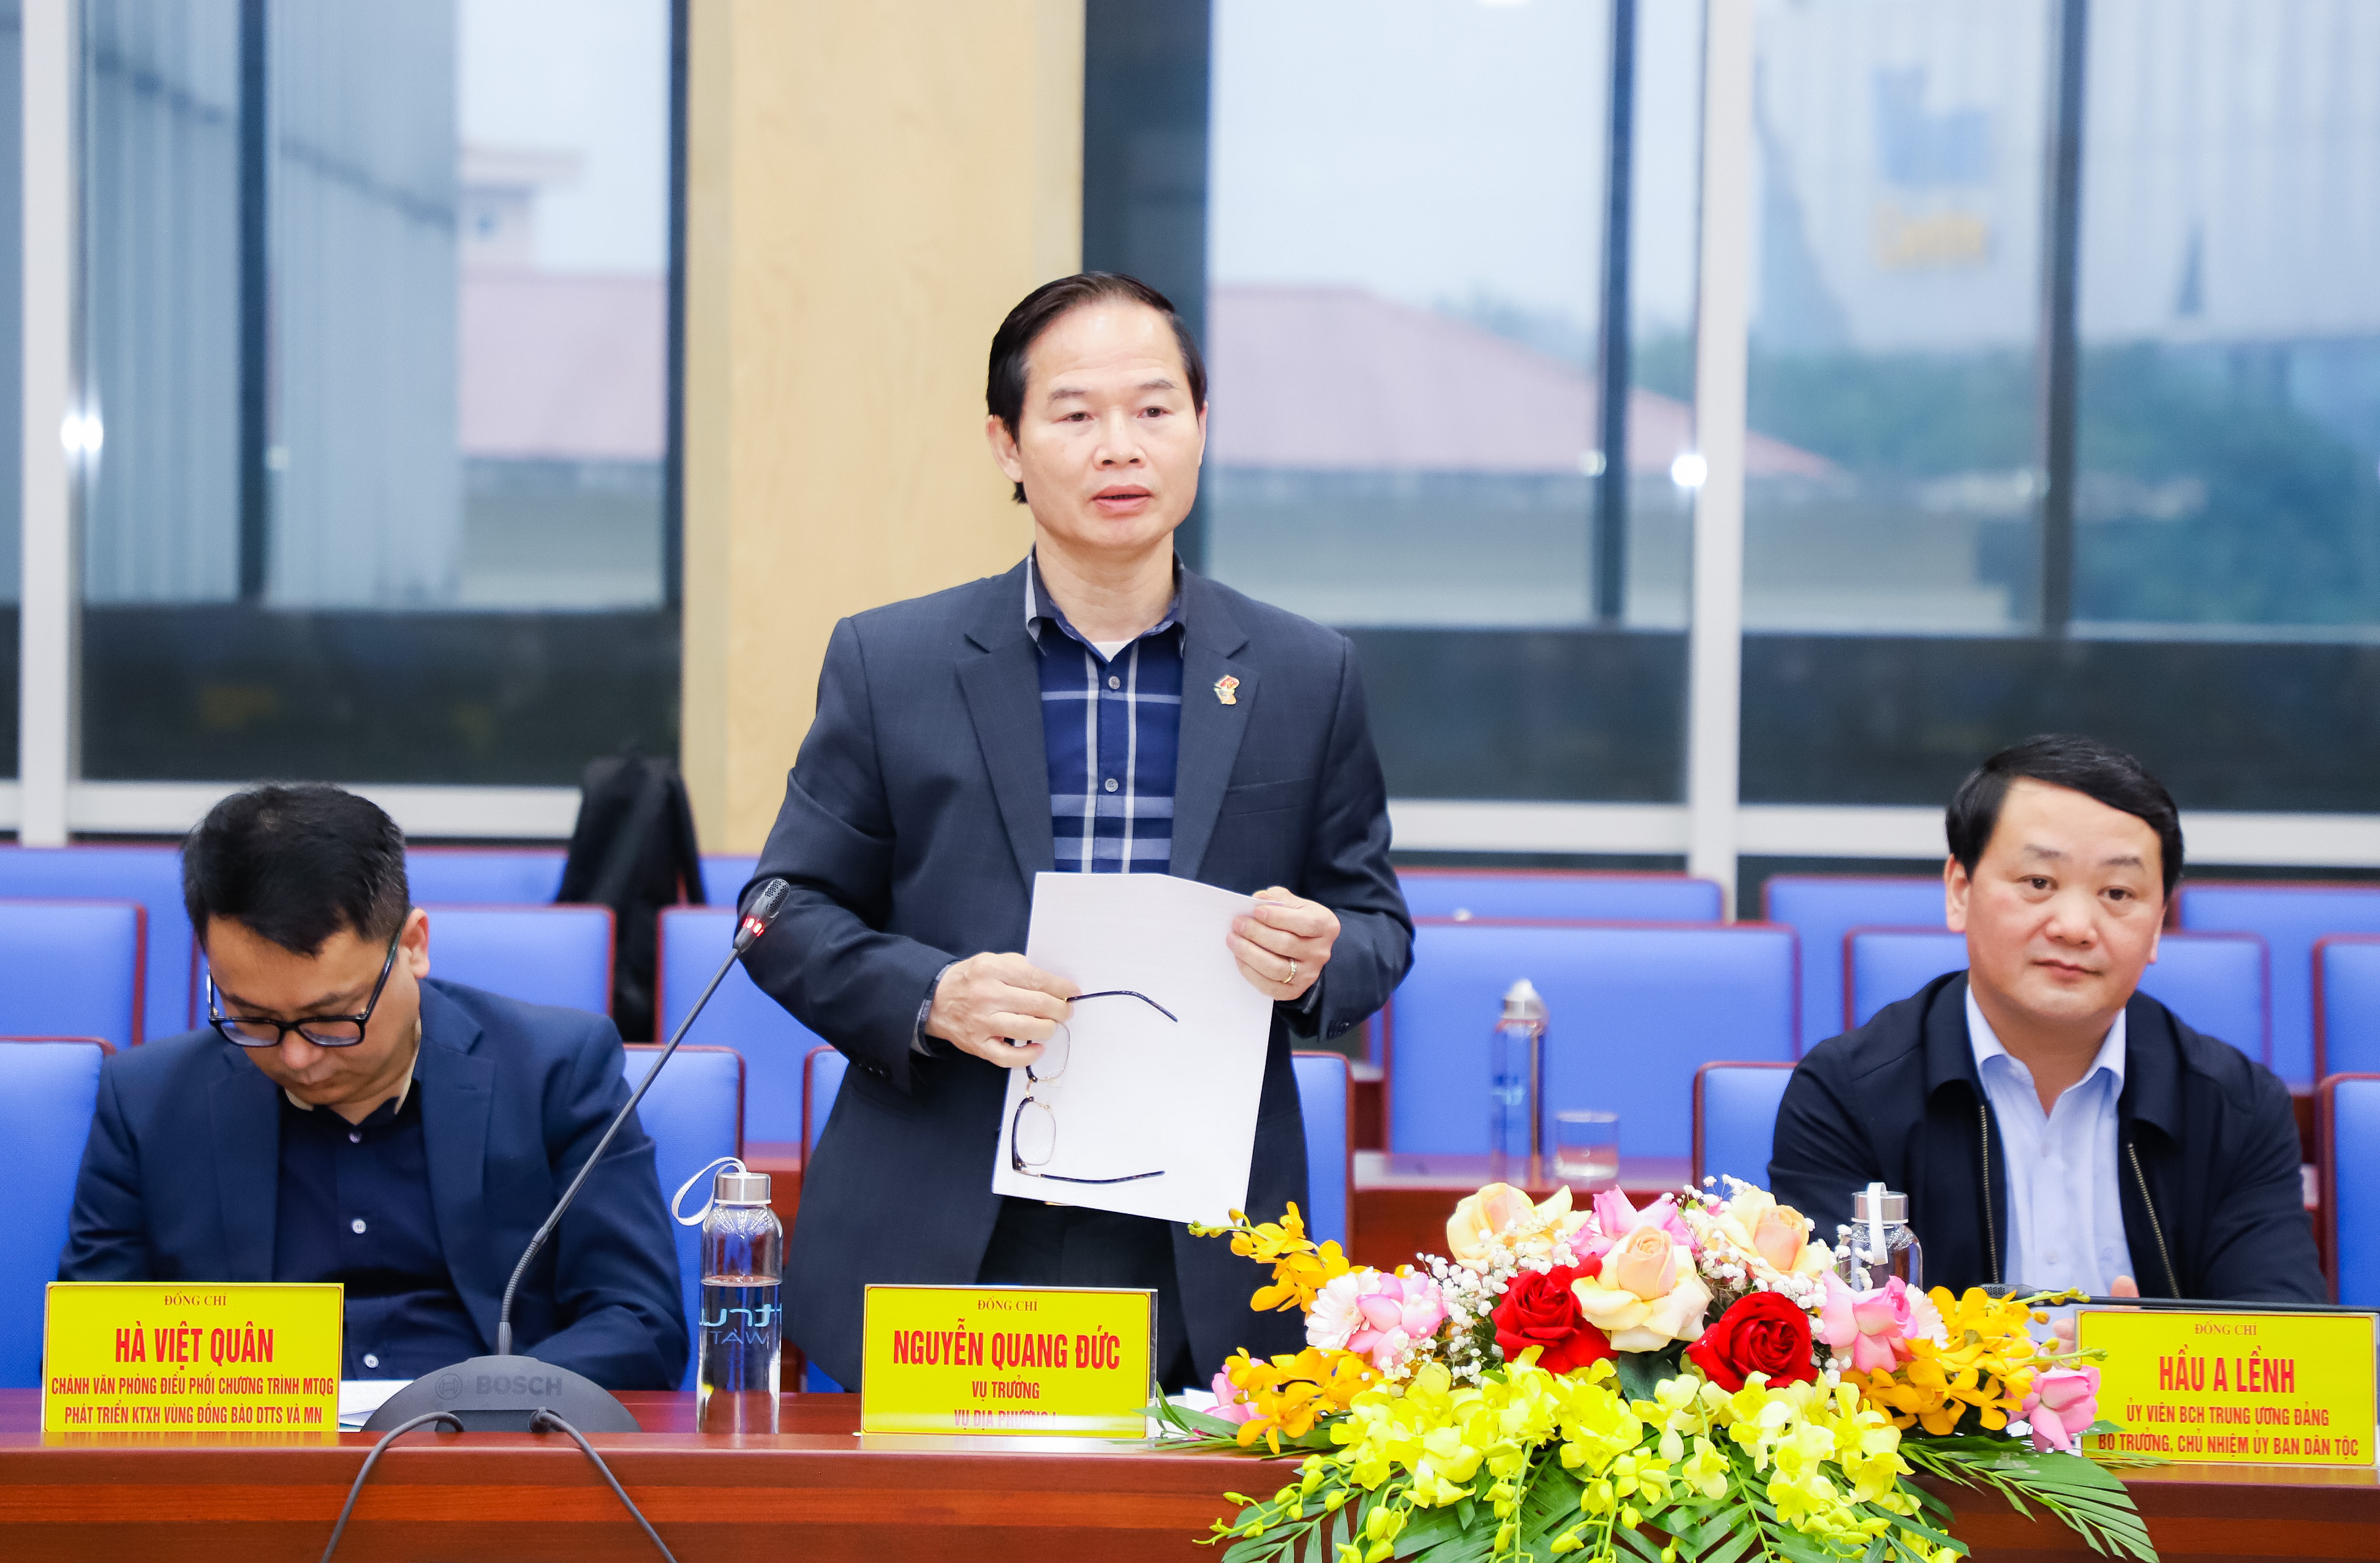 Đồng chí Nguyễn Quang Đức - Vụ trưởng Vụ Địa phương I - Ủy ban Dân tộc phát biểu ý kiến. Ảnh: Phạm Bằng